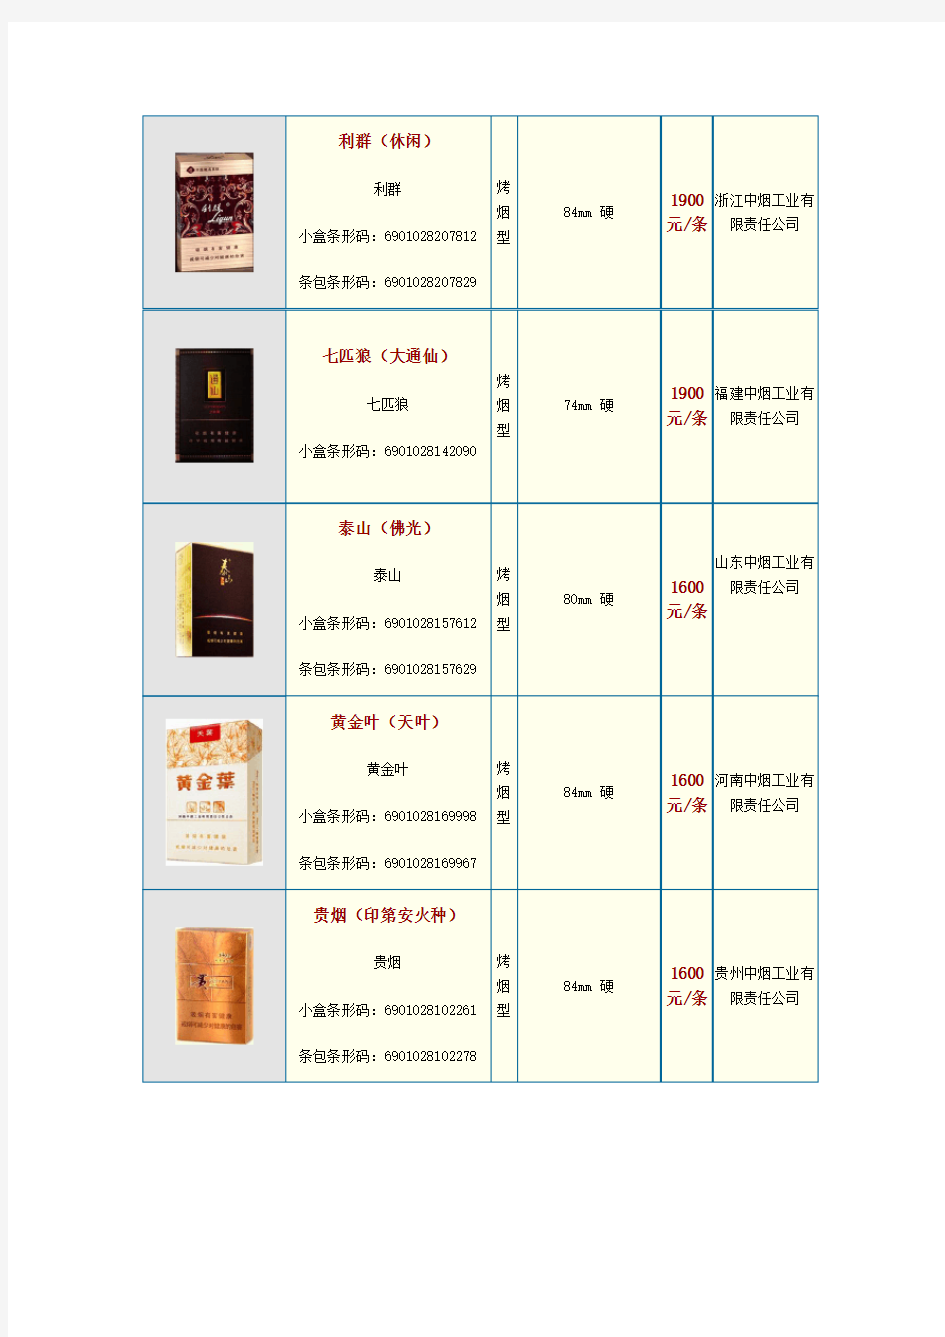 中国各类名烟价格表(900元以上并附图)